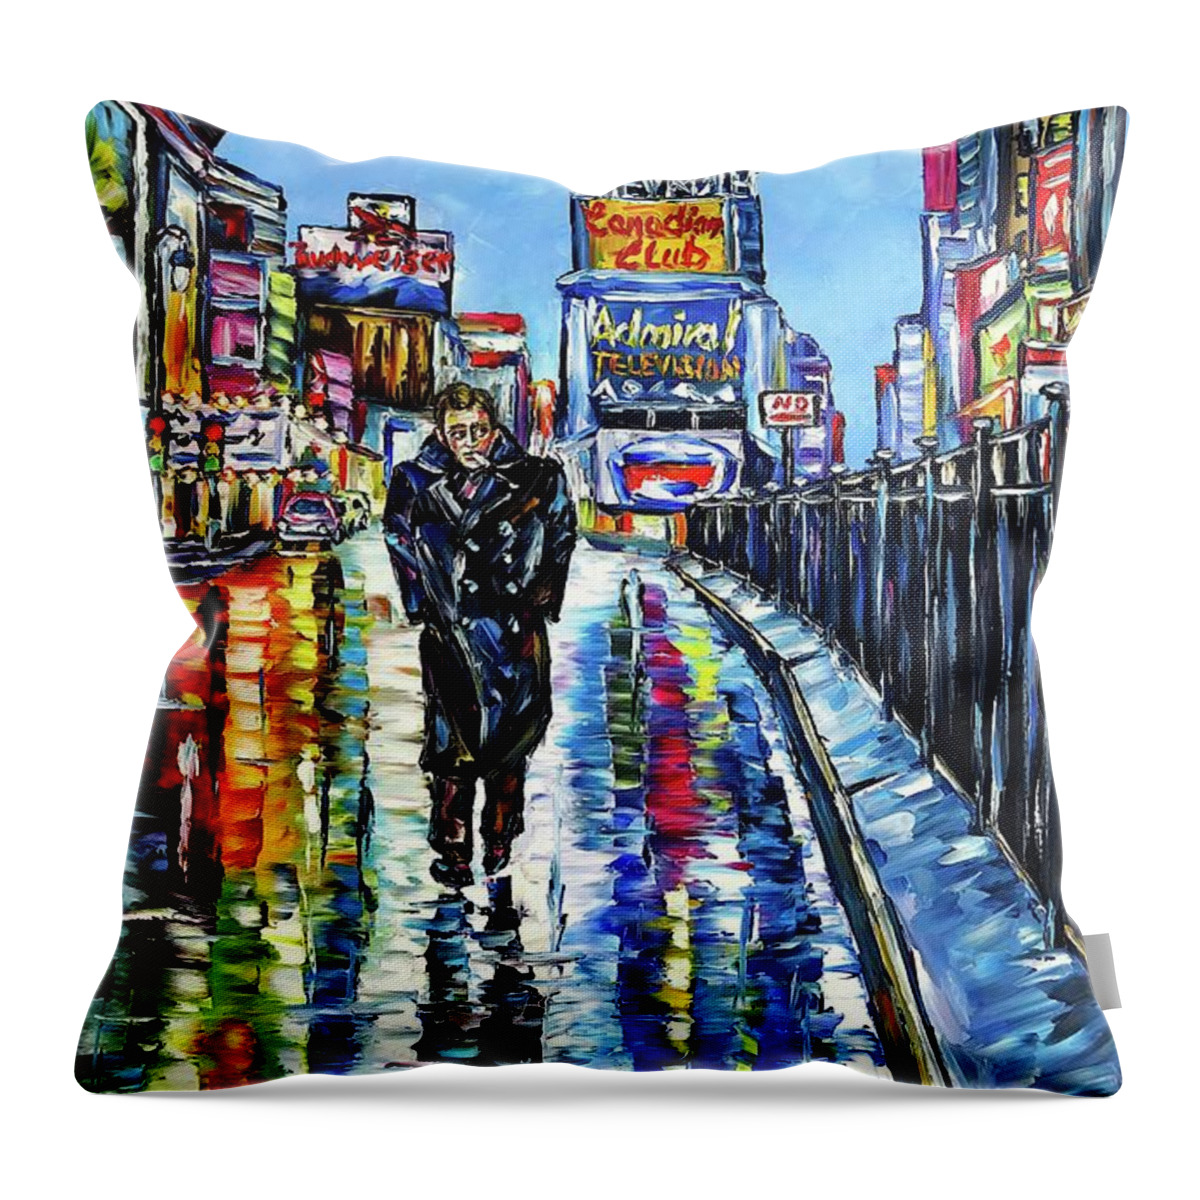 James Dean Painting Throw Pillow featuring the painting James by Mirek Kuzniar